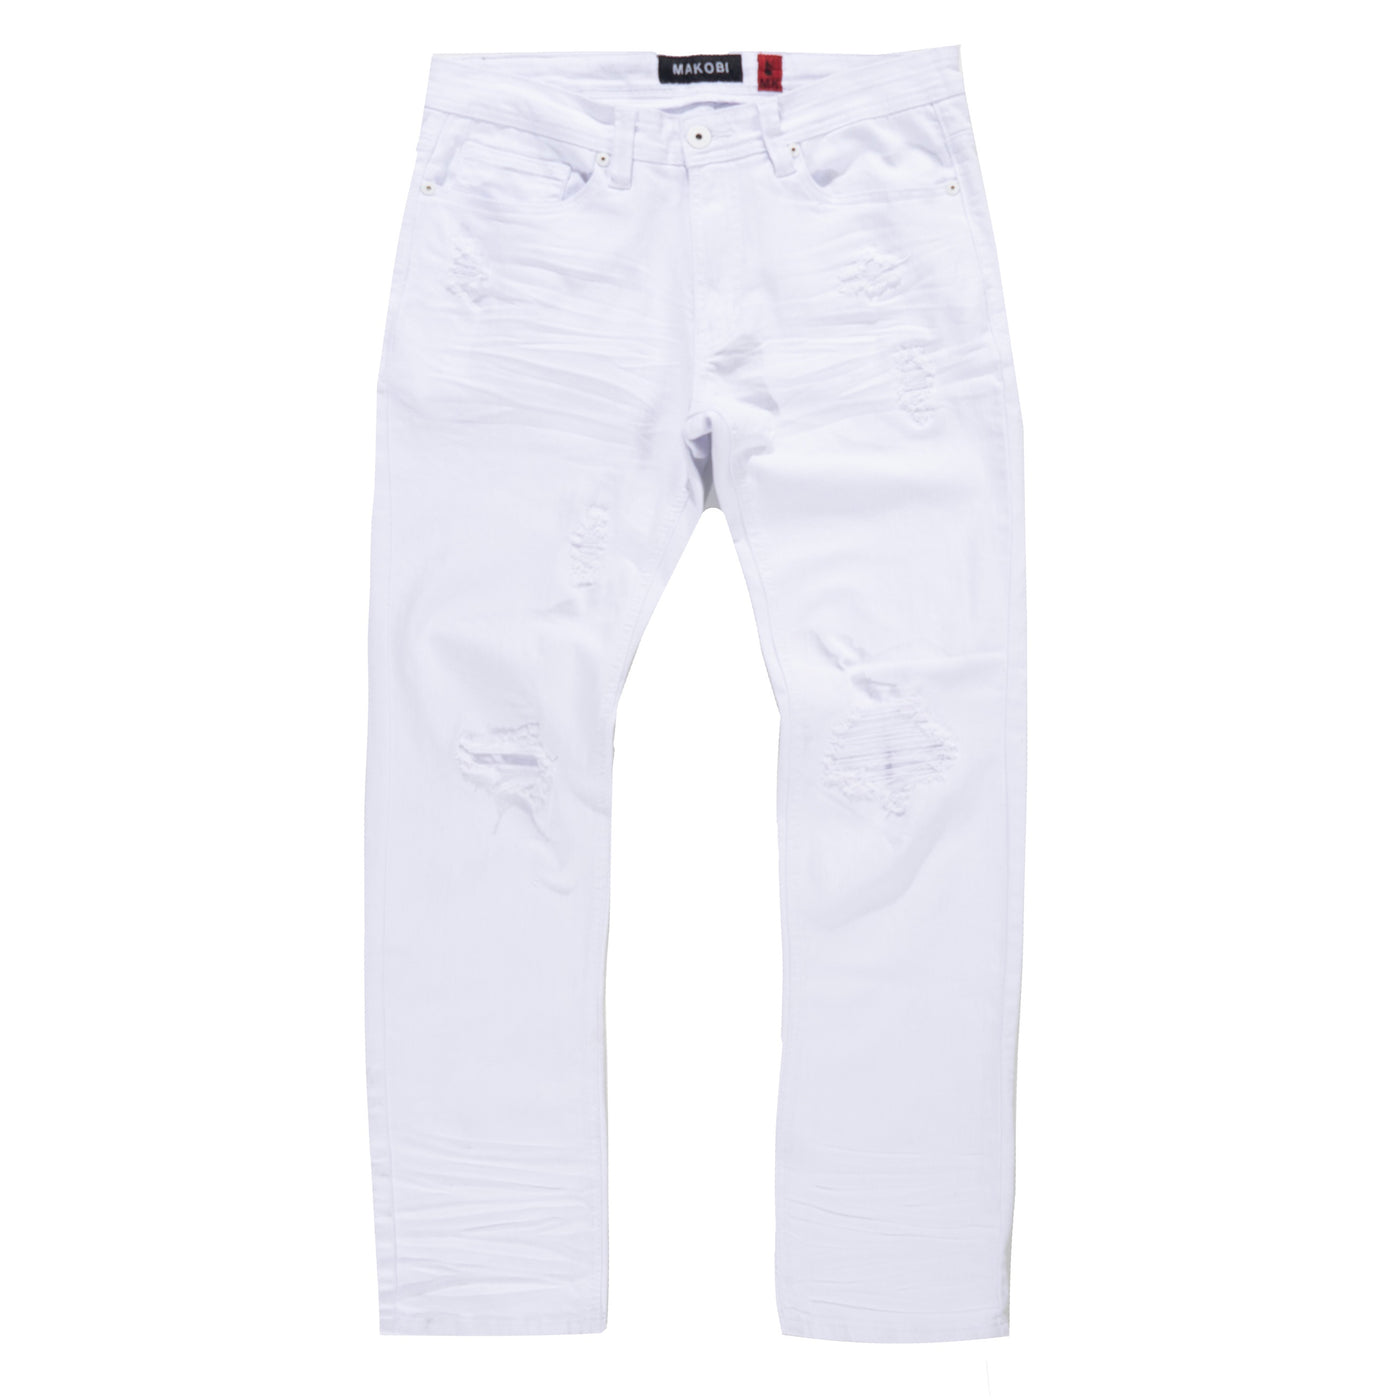 M1932 Makobi Brighton Shredded Twill Jeans - White